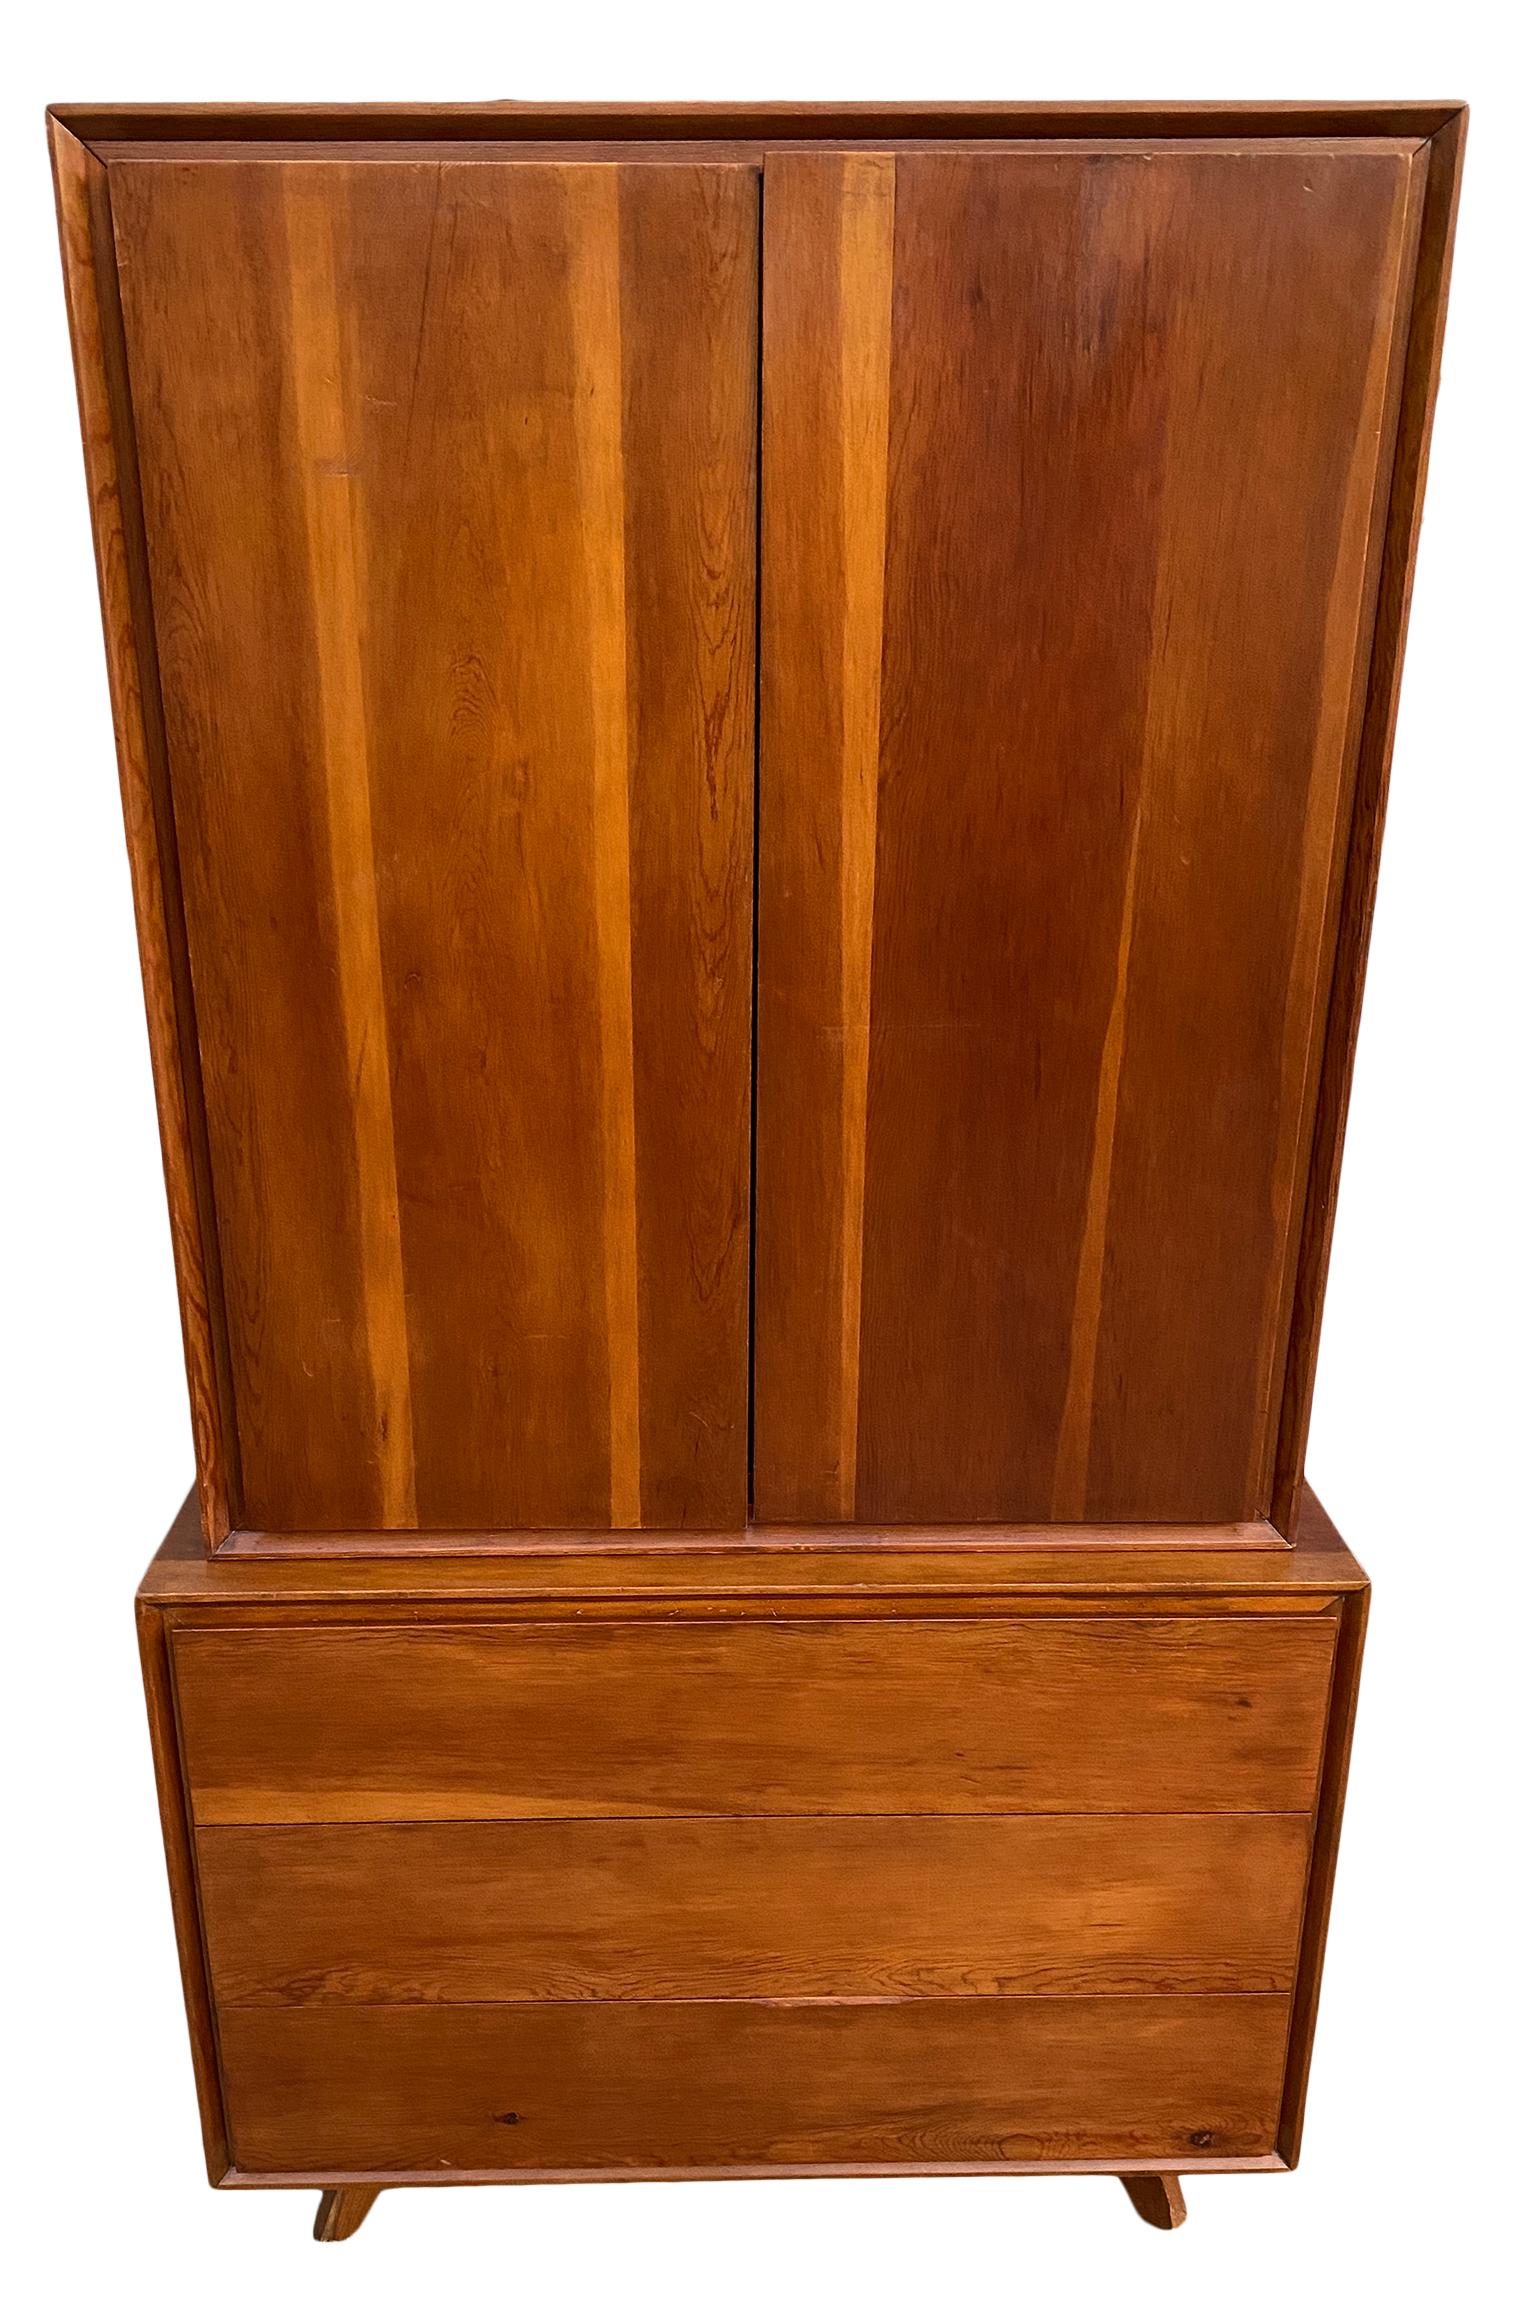 Stunning Mid-Century Modern Studio Craft custom handmade tall 3 drawer dresser wardrobe style of Nakashima. Armoire à 2 sections très propre et originale - commode inférieure et armoire supérieure. Magnifique design minimaliste sculpté. Tous les